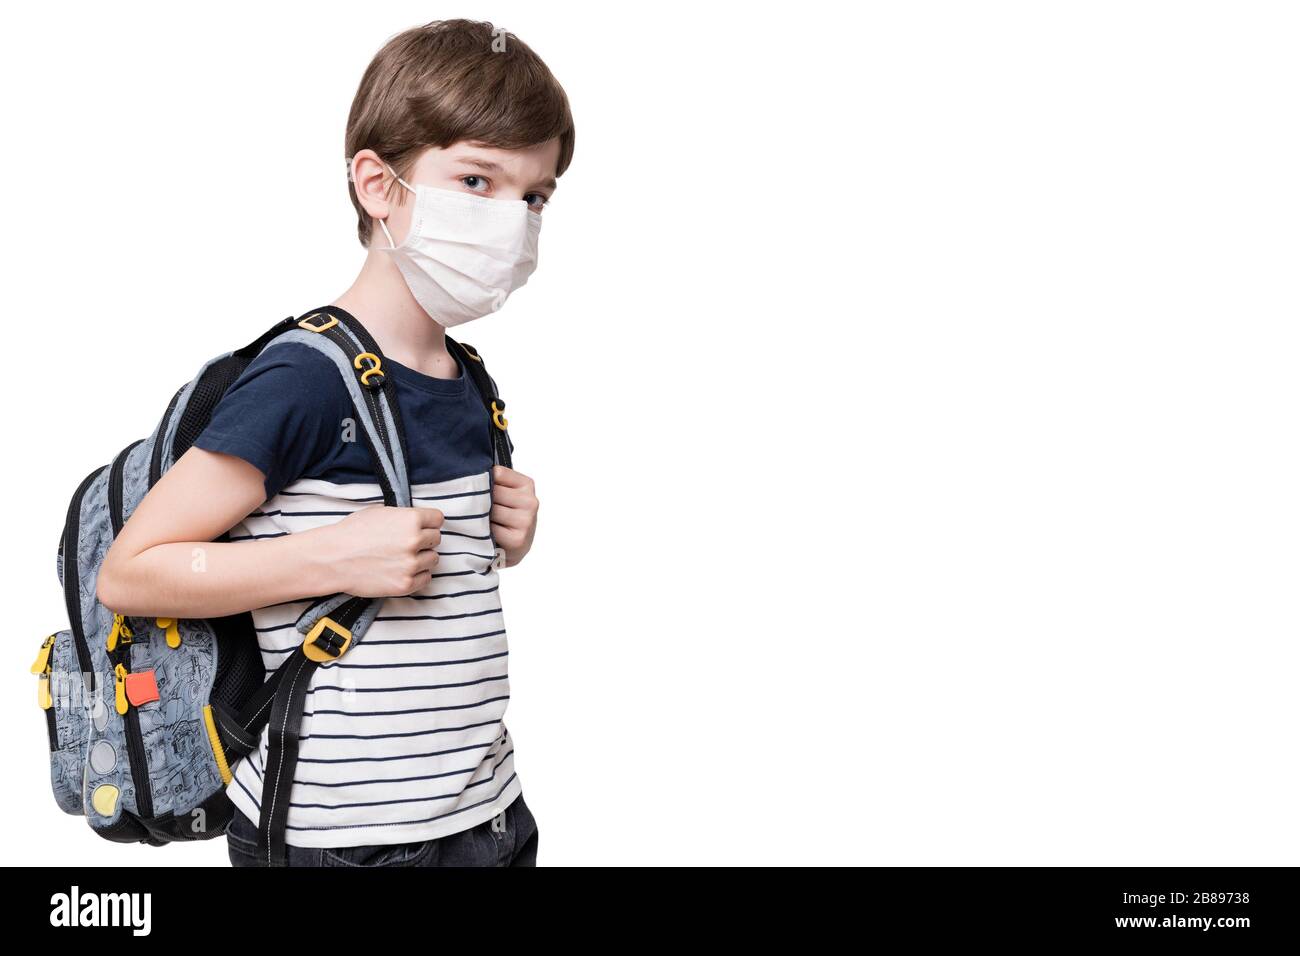 Portrait d'un enfant avec masque de visage tenant le sac scolaire, isolé sur fond blanc Banque D'Images